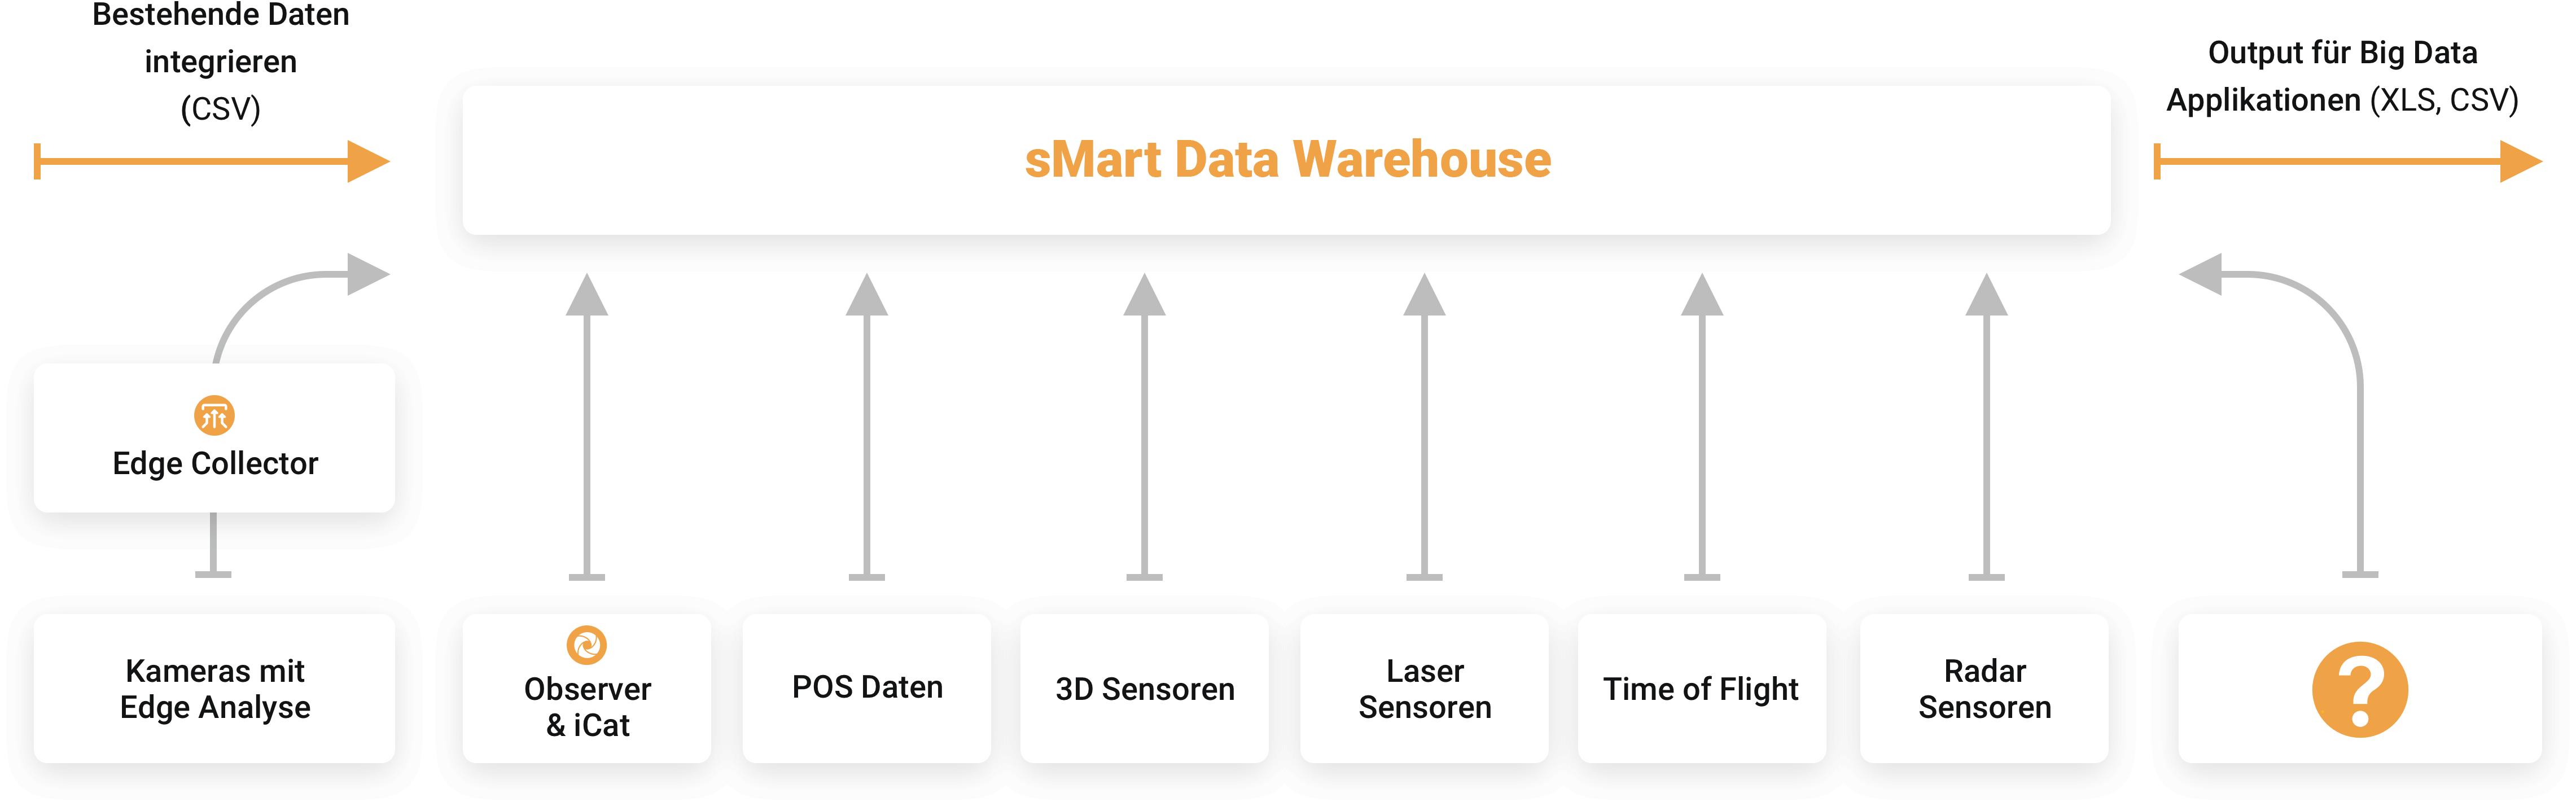 Die Netavis Multi-Sensoren-Plattform mit dem sMart Data Warehouse das daten von einer vielzahl von sensoren und eigenen sowie fremden systemen sammelt